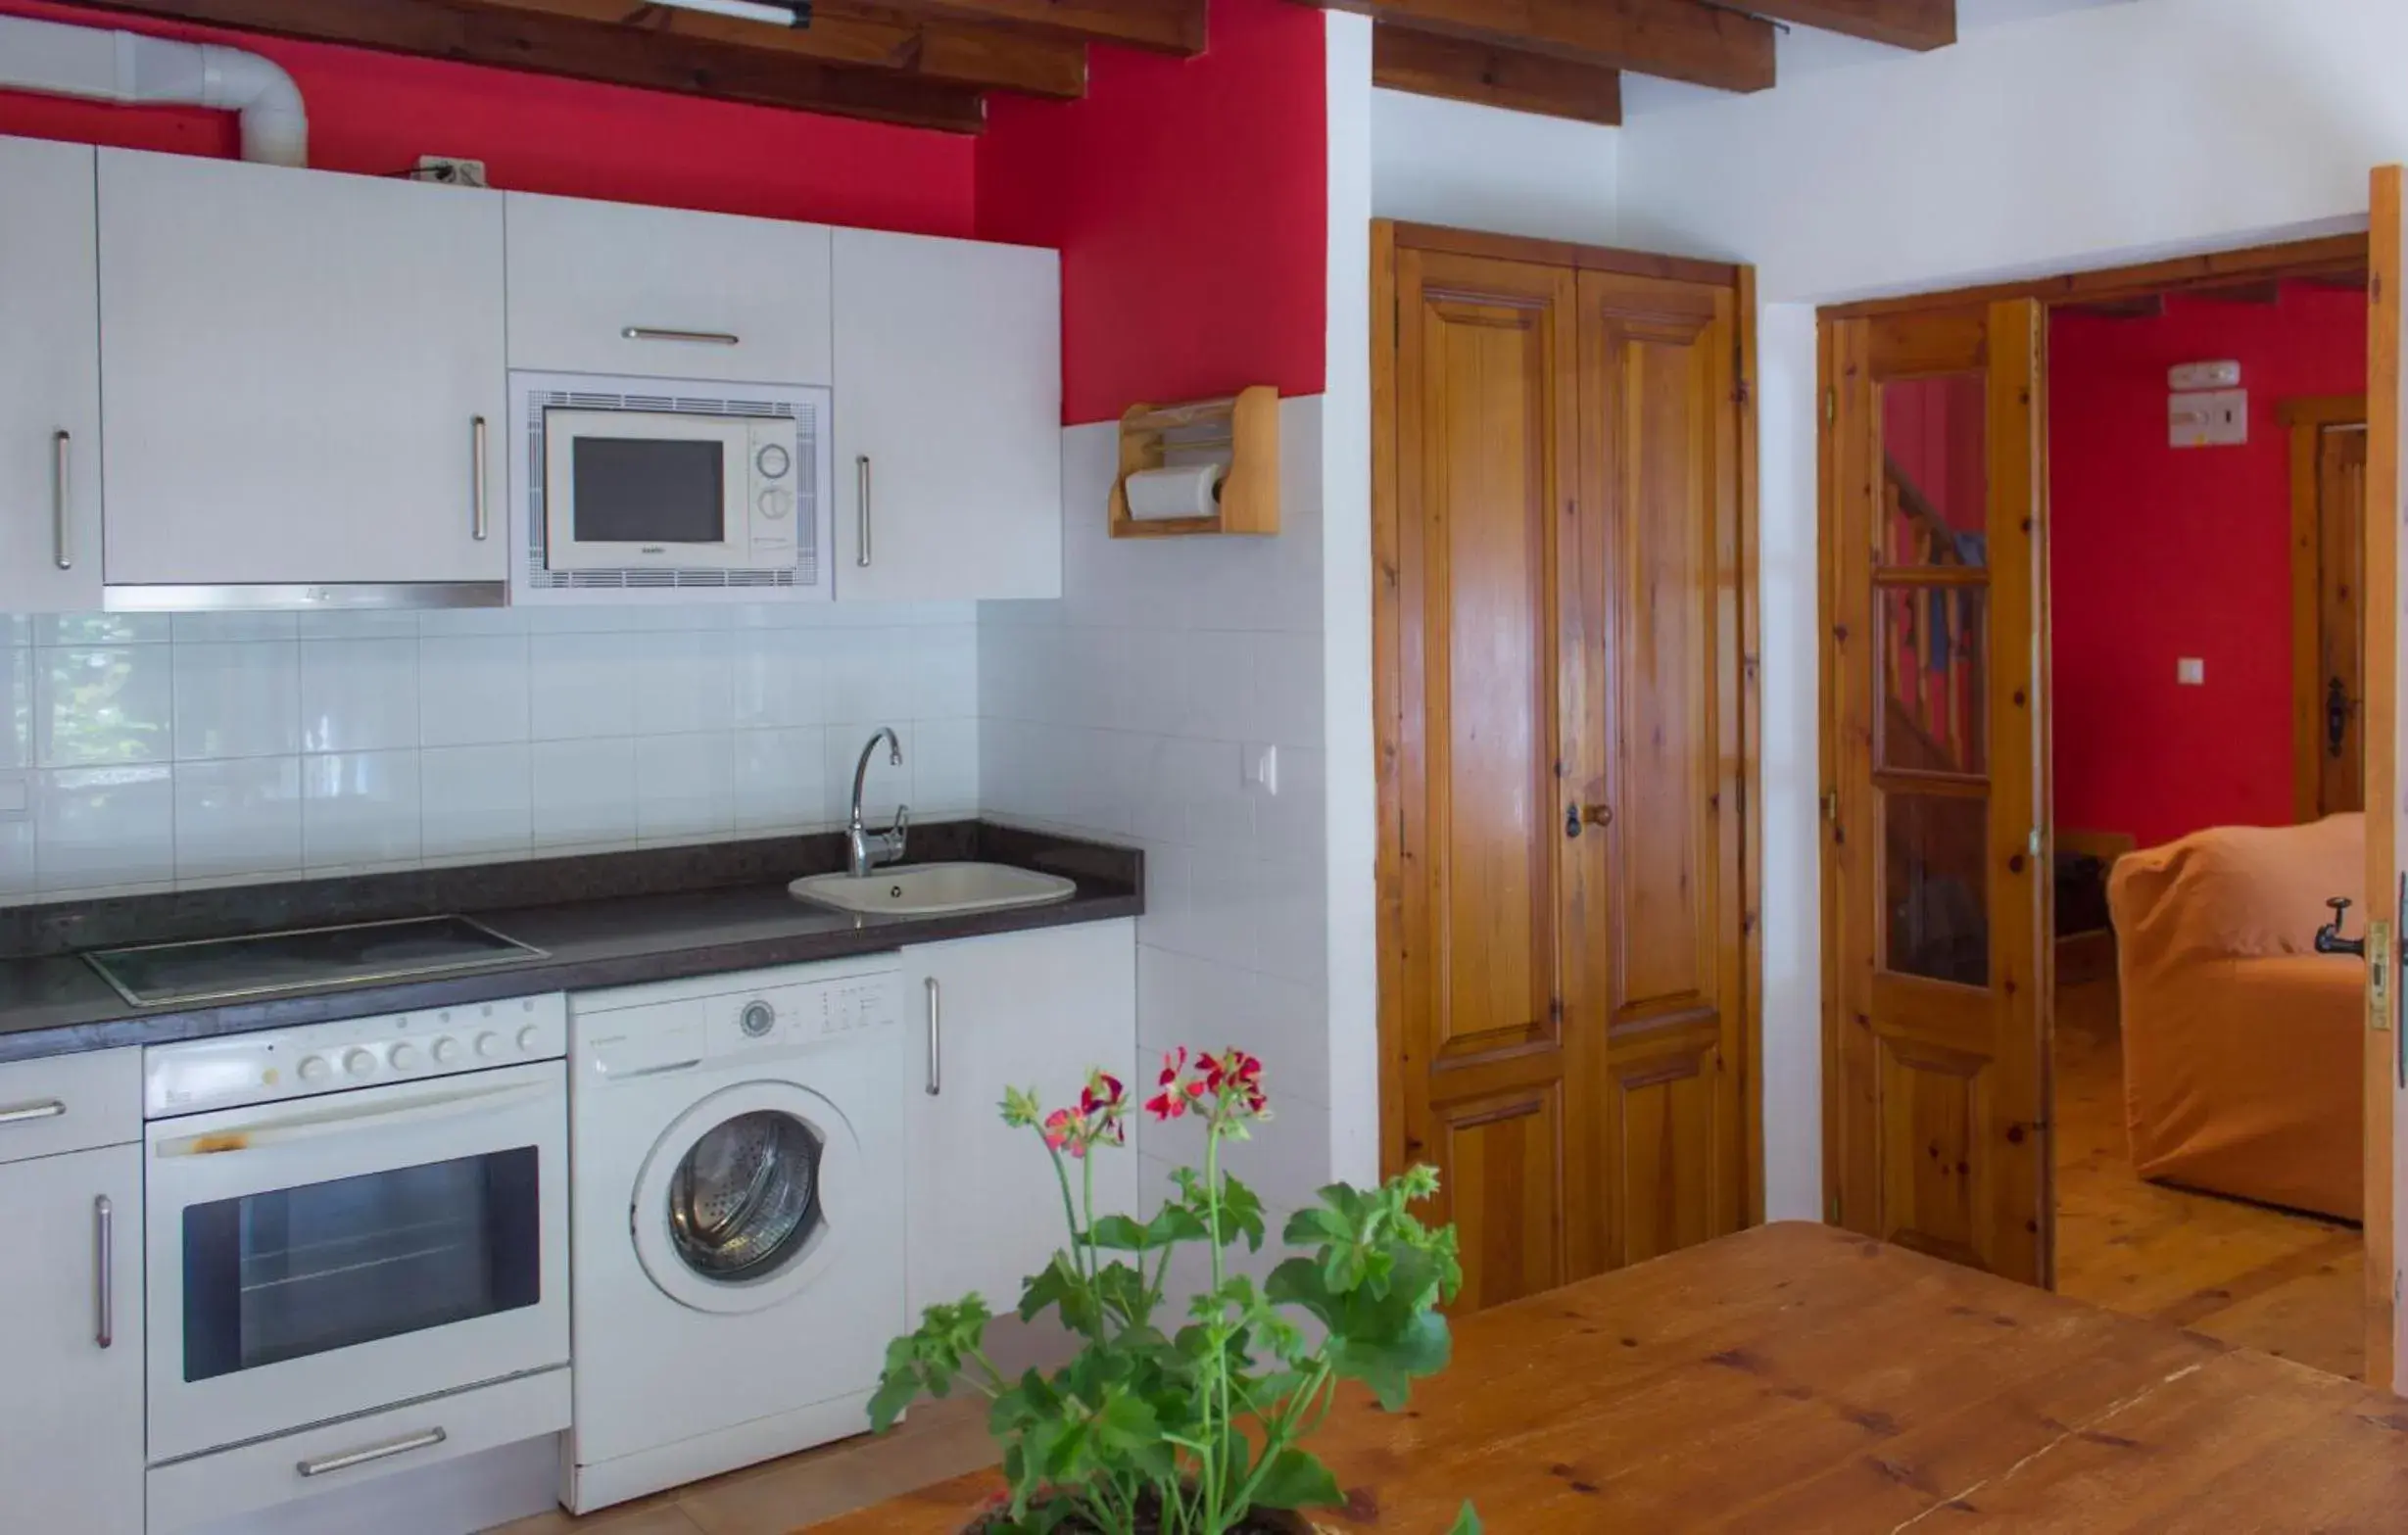 Kitchen or kitchenette, Kitchen/Kitchenette in Viviendas Rurales El Covaju